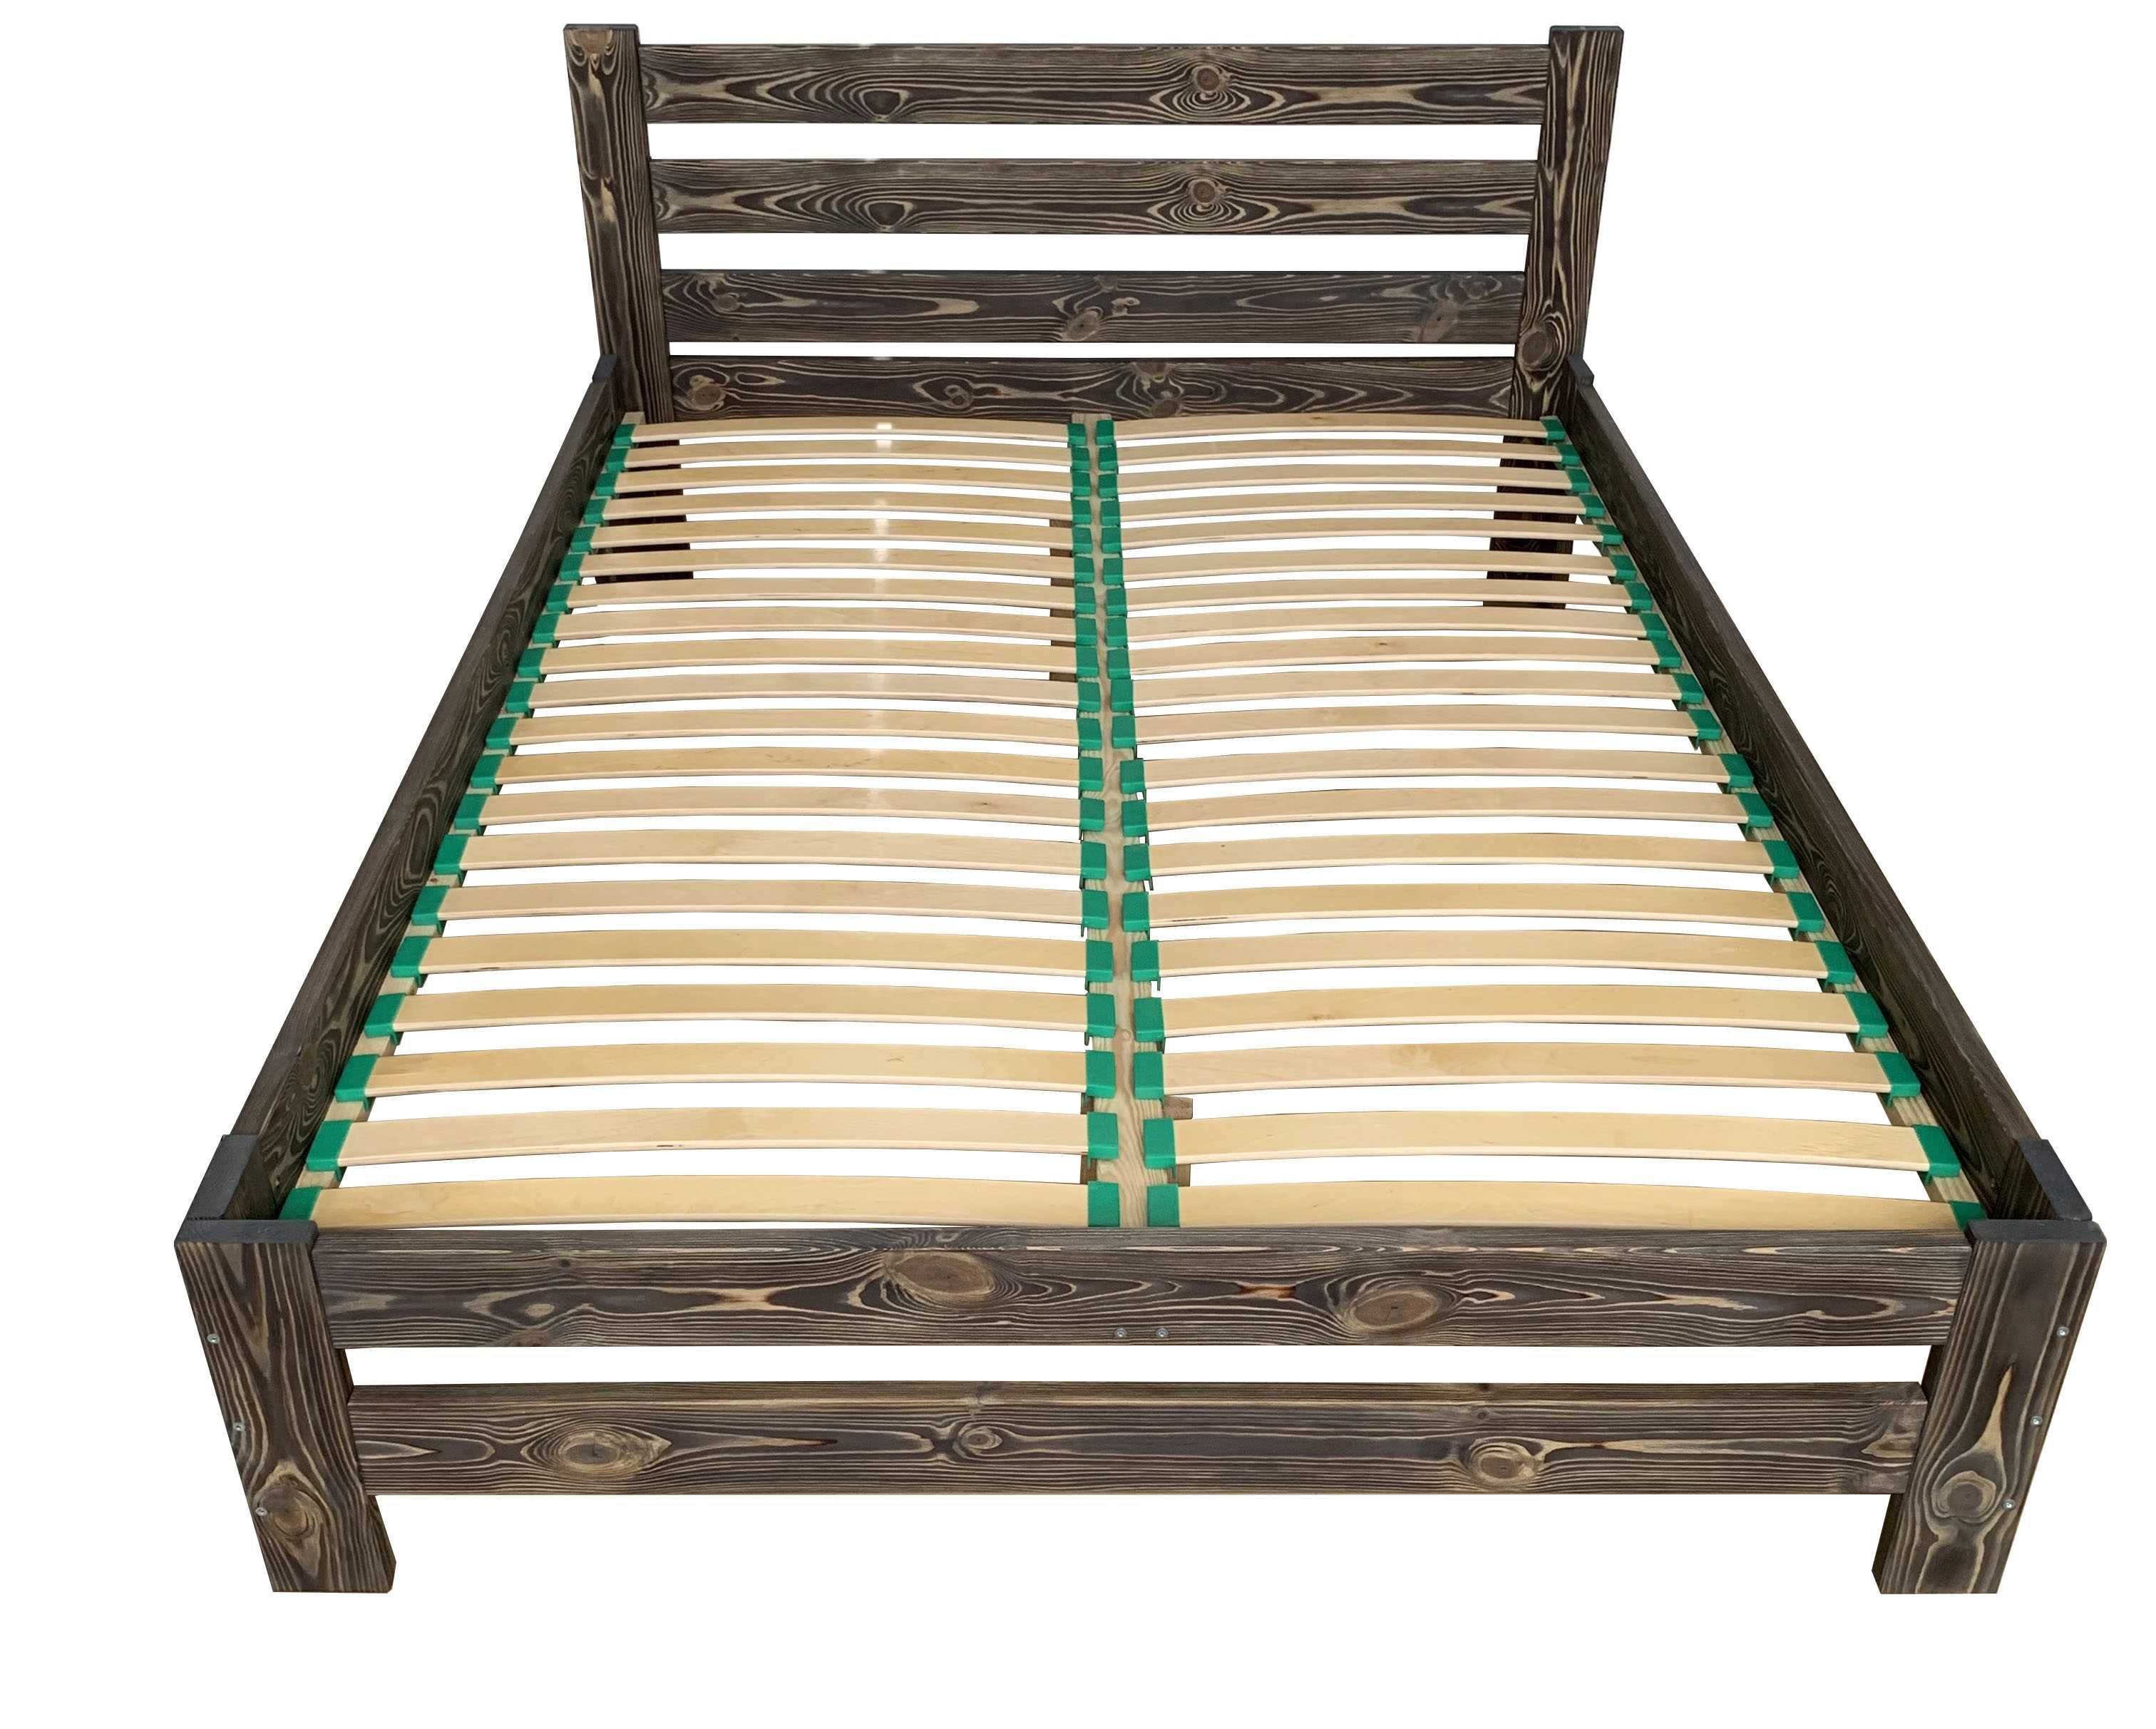 Łóżko 140x200 drewniane LISTWY GIĘTE 40 szt Zagłowie 85 cm KOLORY